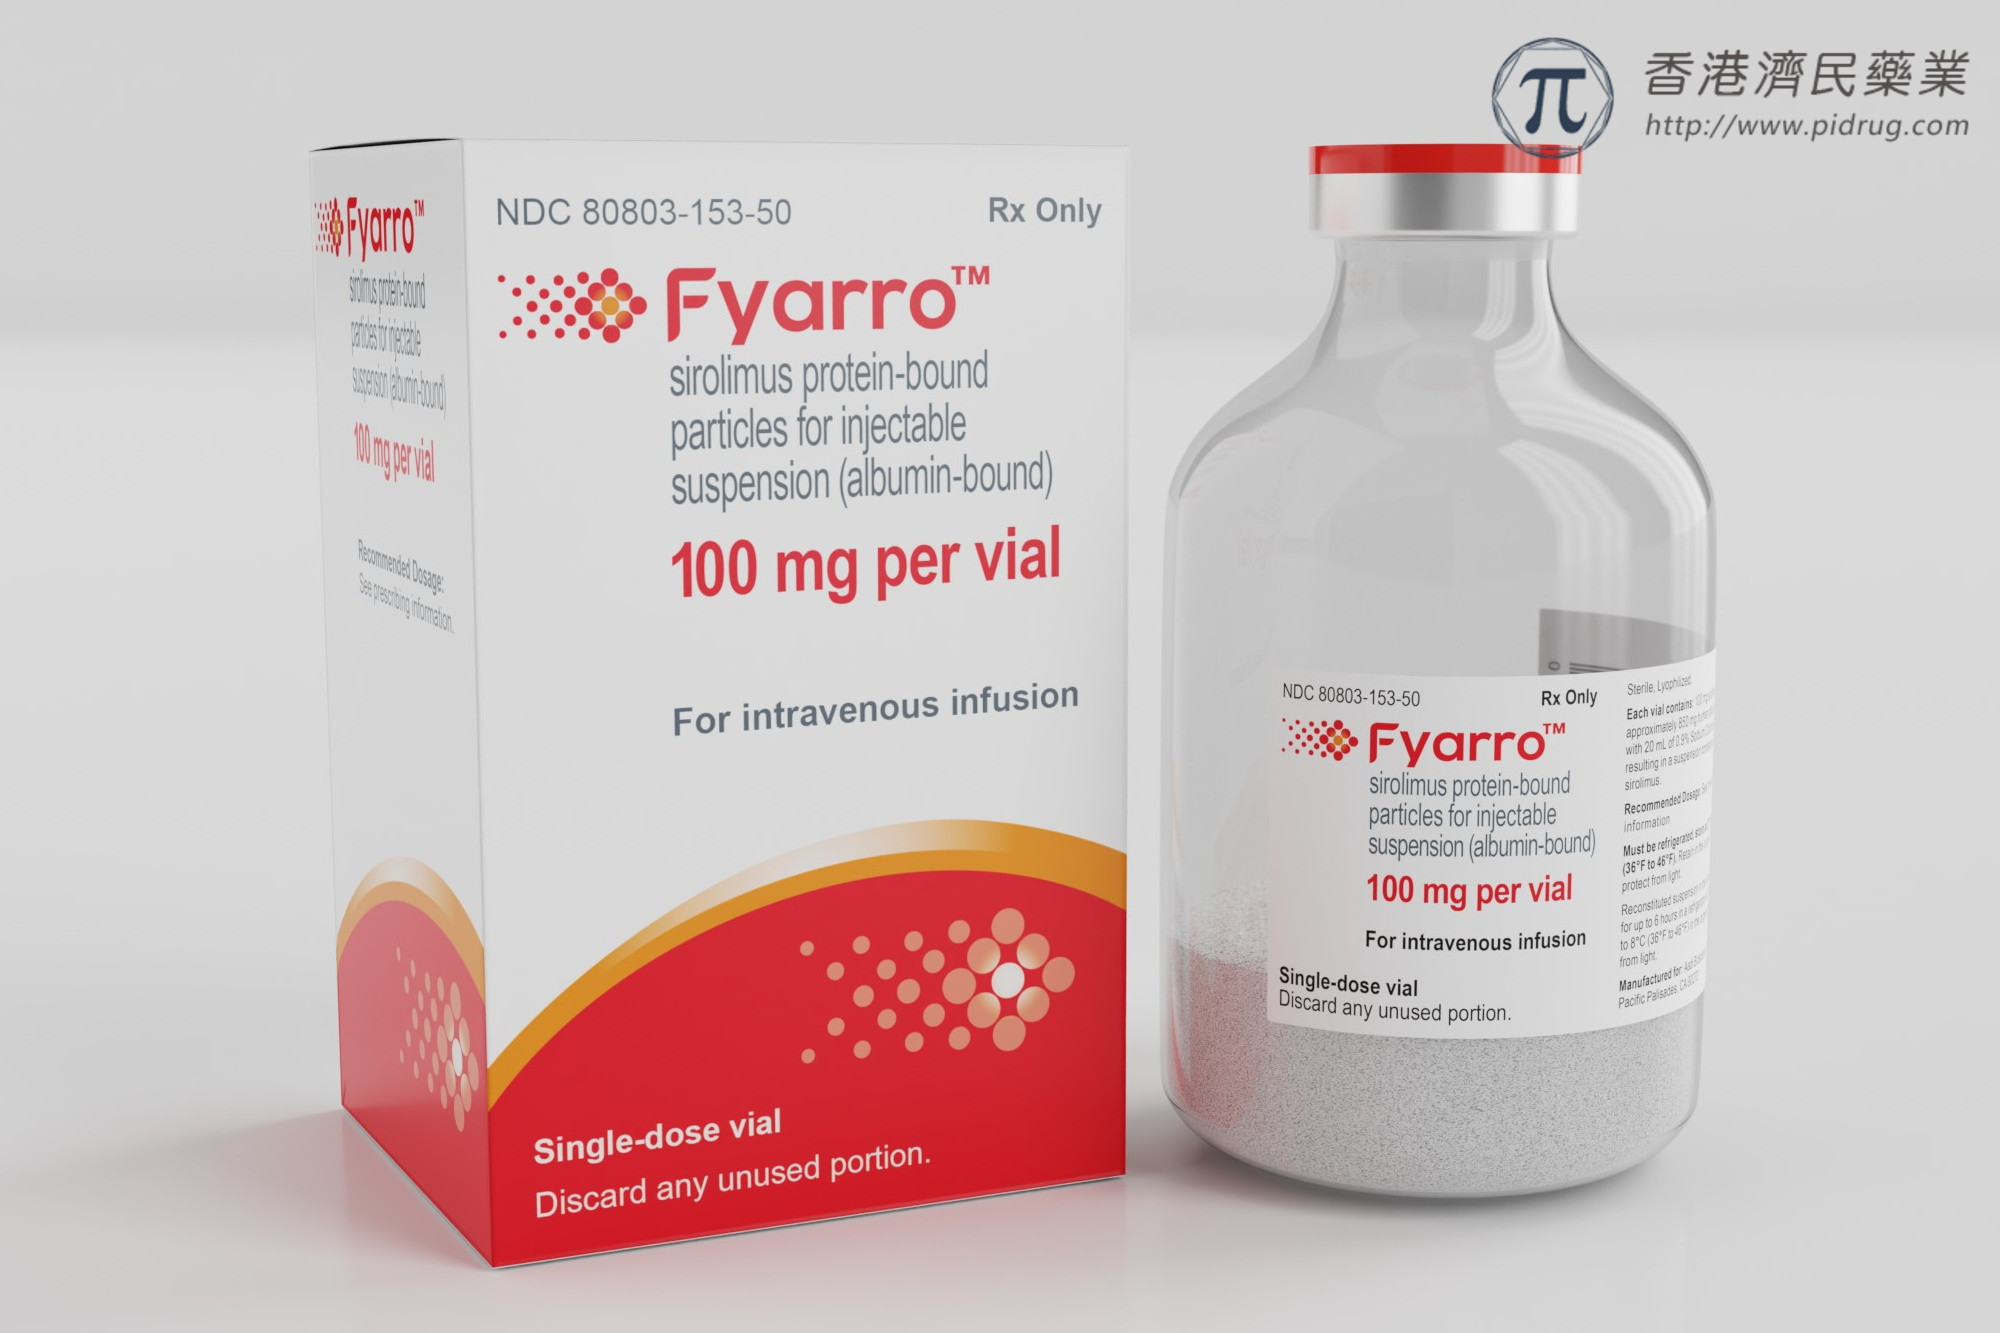 Fyarro(西罗莫司白蛋白结合型纳米颗粒)用于罕见肉瘤疗效、副作用、禁忌